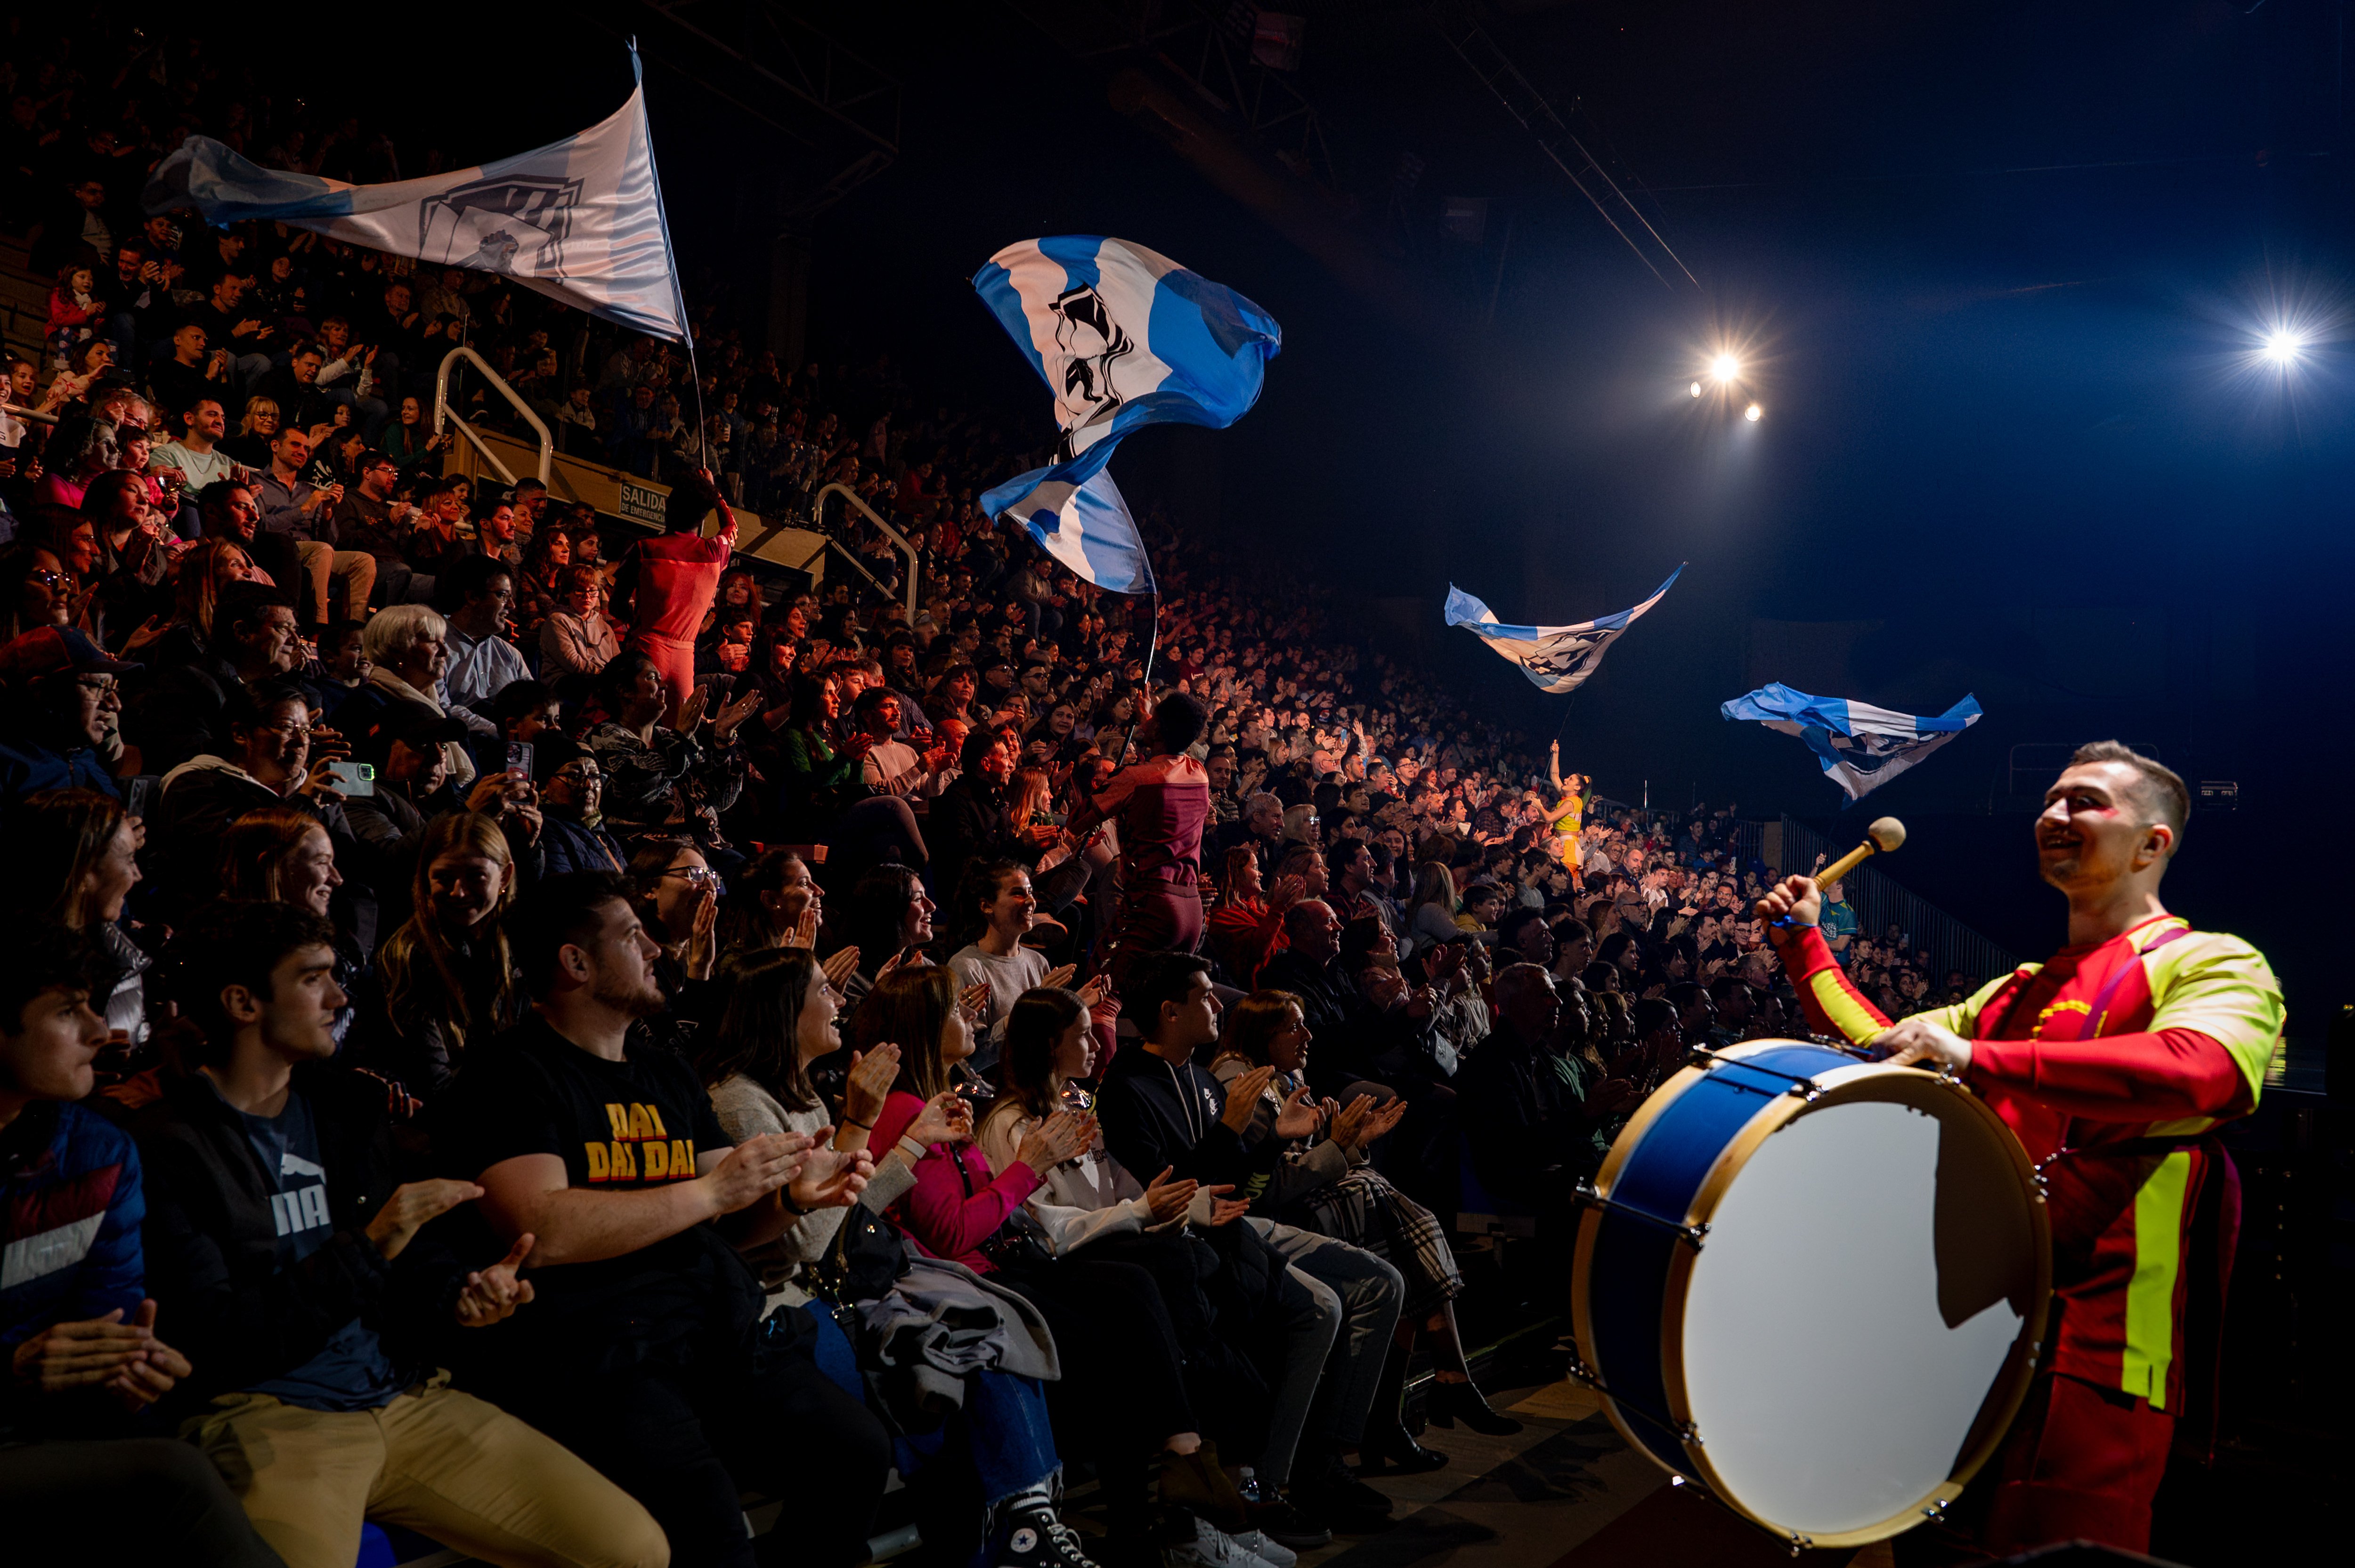 Última función de Messi10 by Cirque du Soleil en Rosario